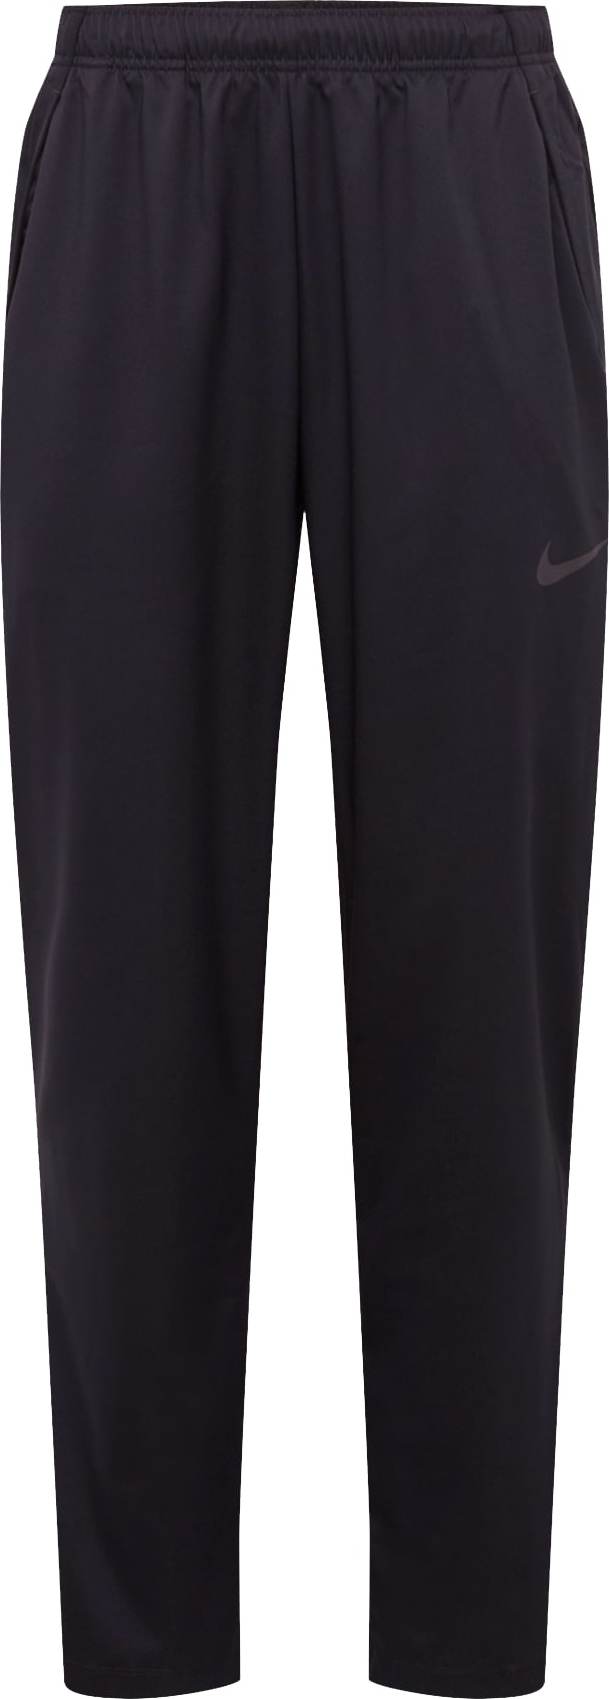 Sportovní kalhoty 'Dry Woven' Nike šedá / černá